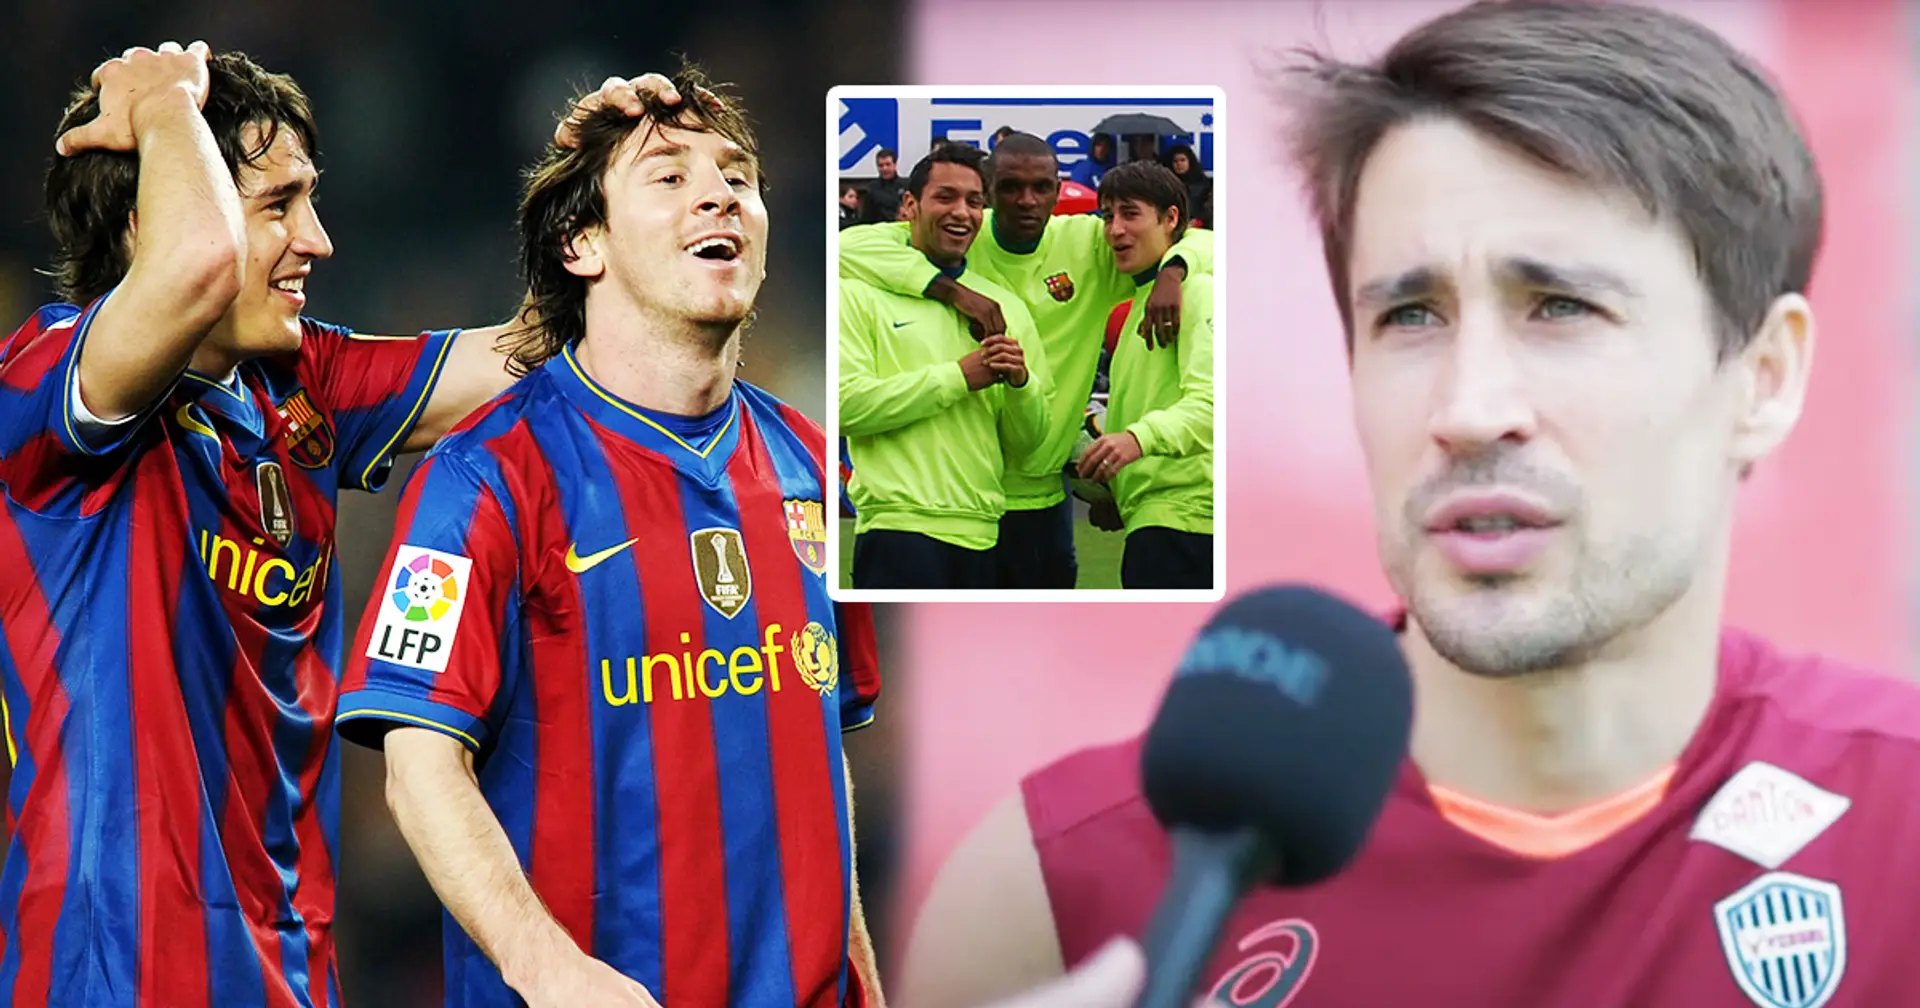 "Leo ist unfassbar. Aber der war etwas anderes": Bojan soll den besten Spieler nennen, mit dem er gespielt hat - es ist NICHT Lionel Messi